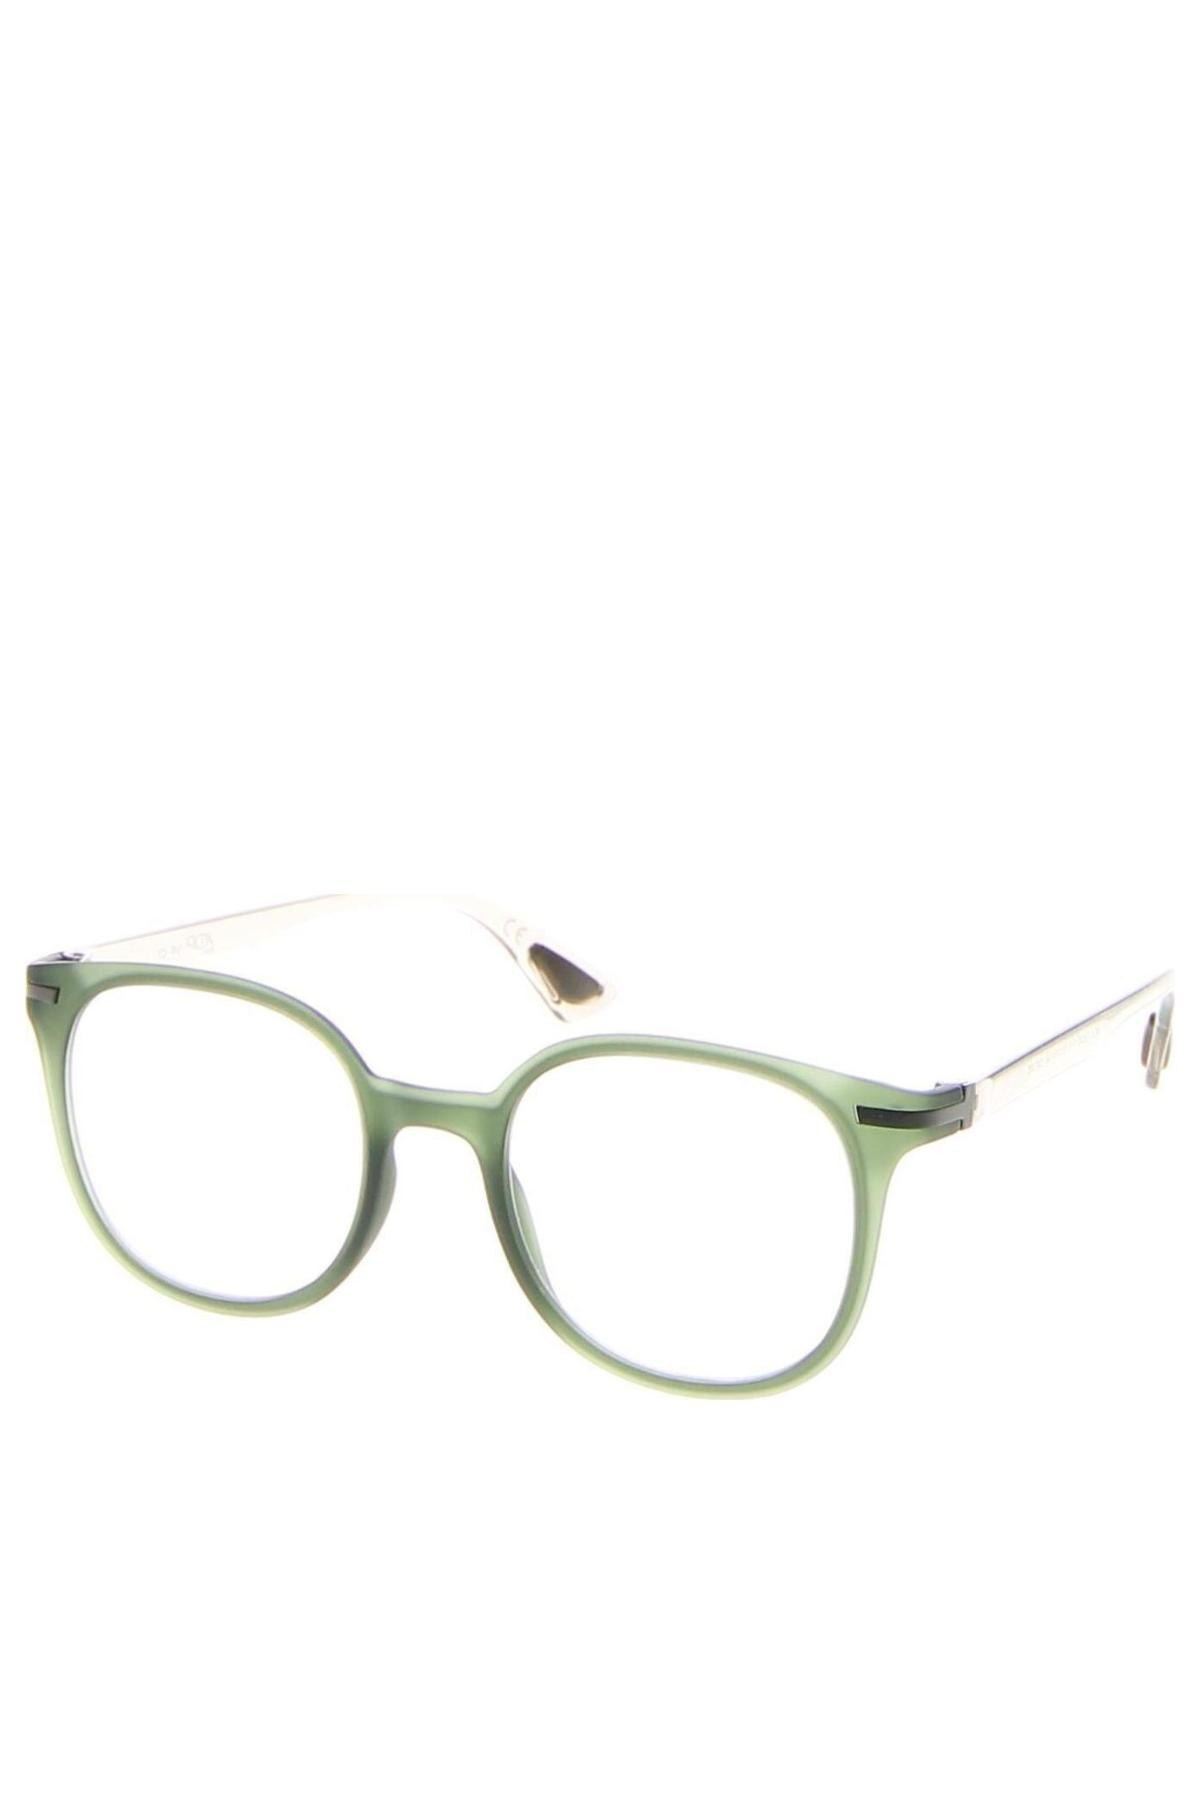 Σκελετοί γυαλιών  AirDP, Χρώμα Πράσινο, Τιμή 95,96 €